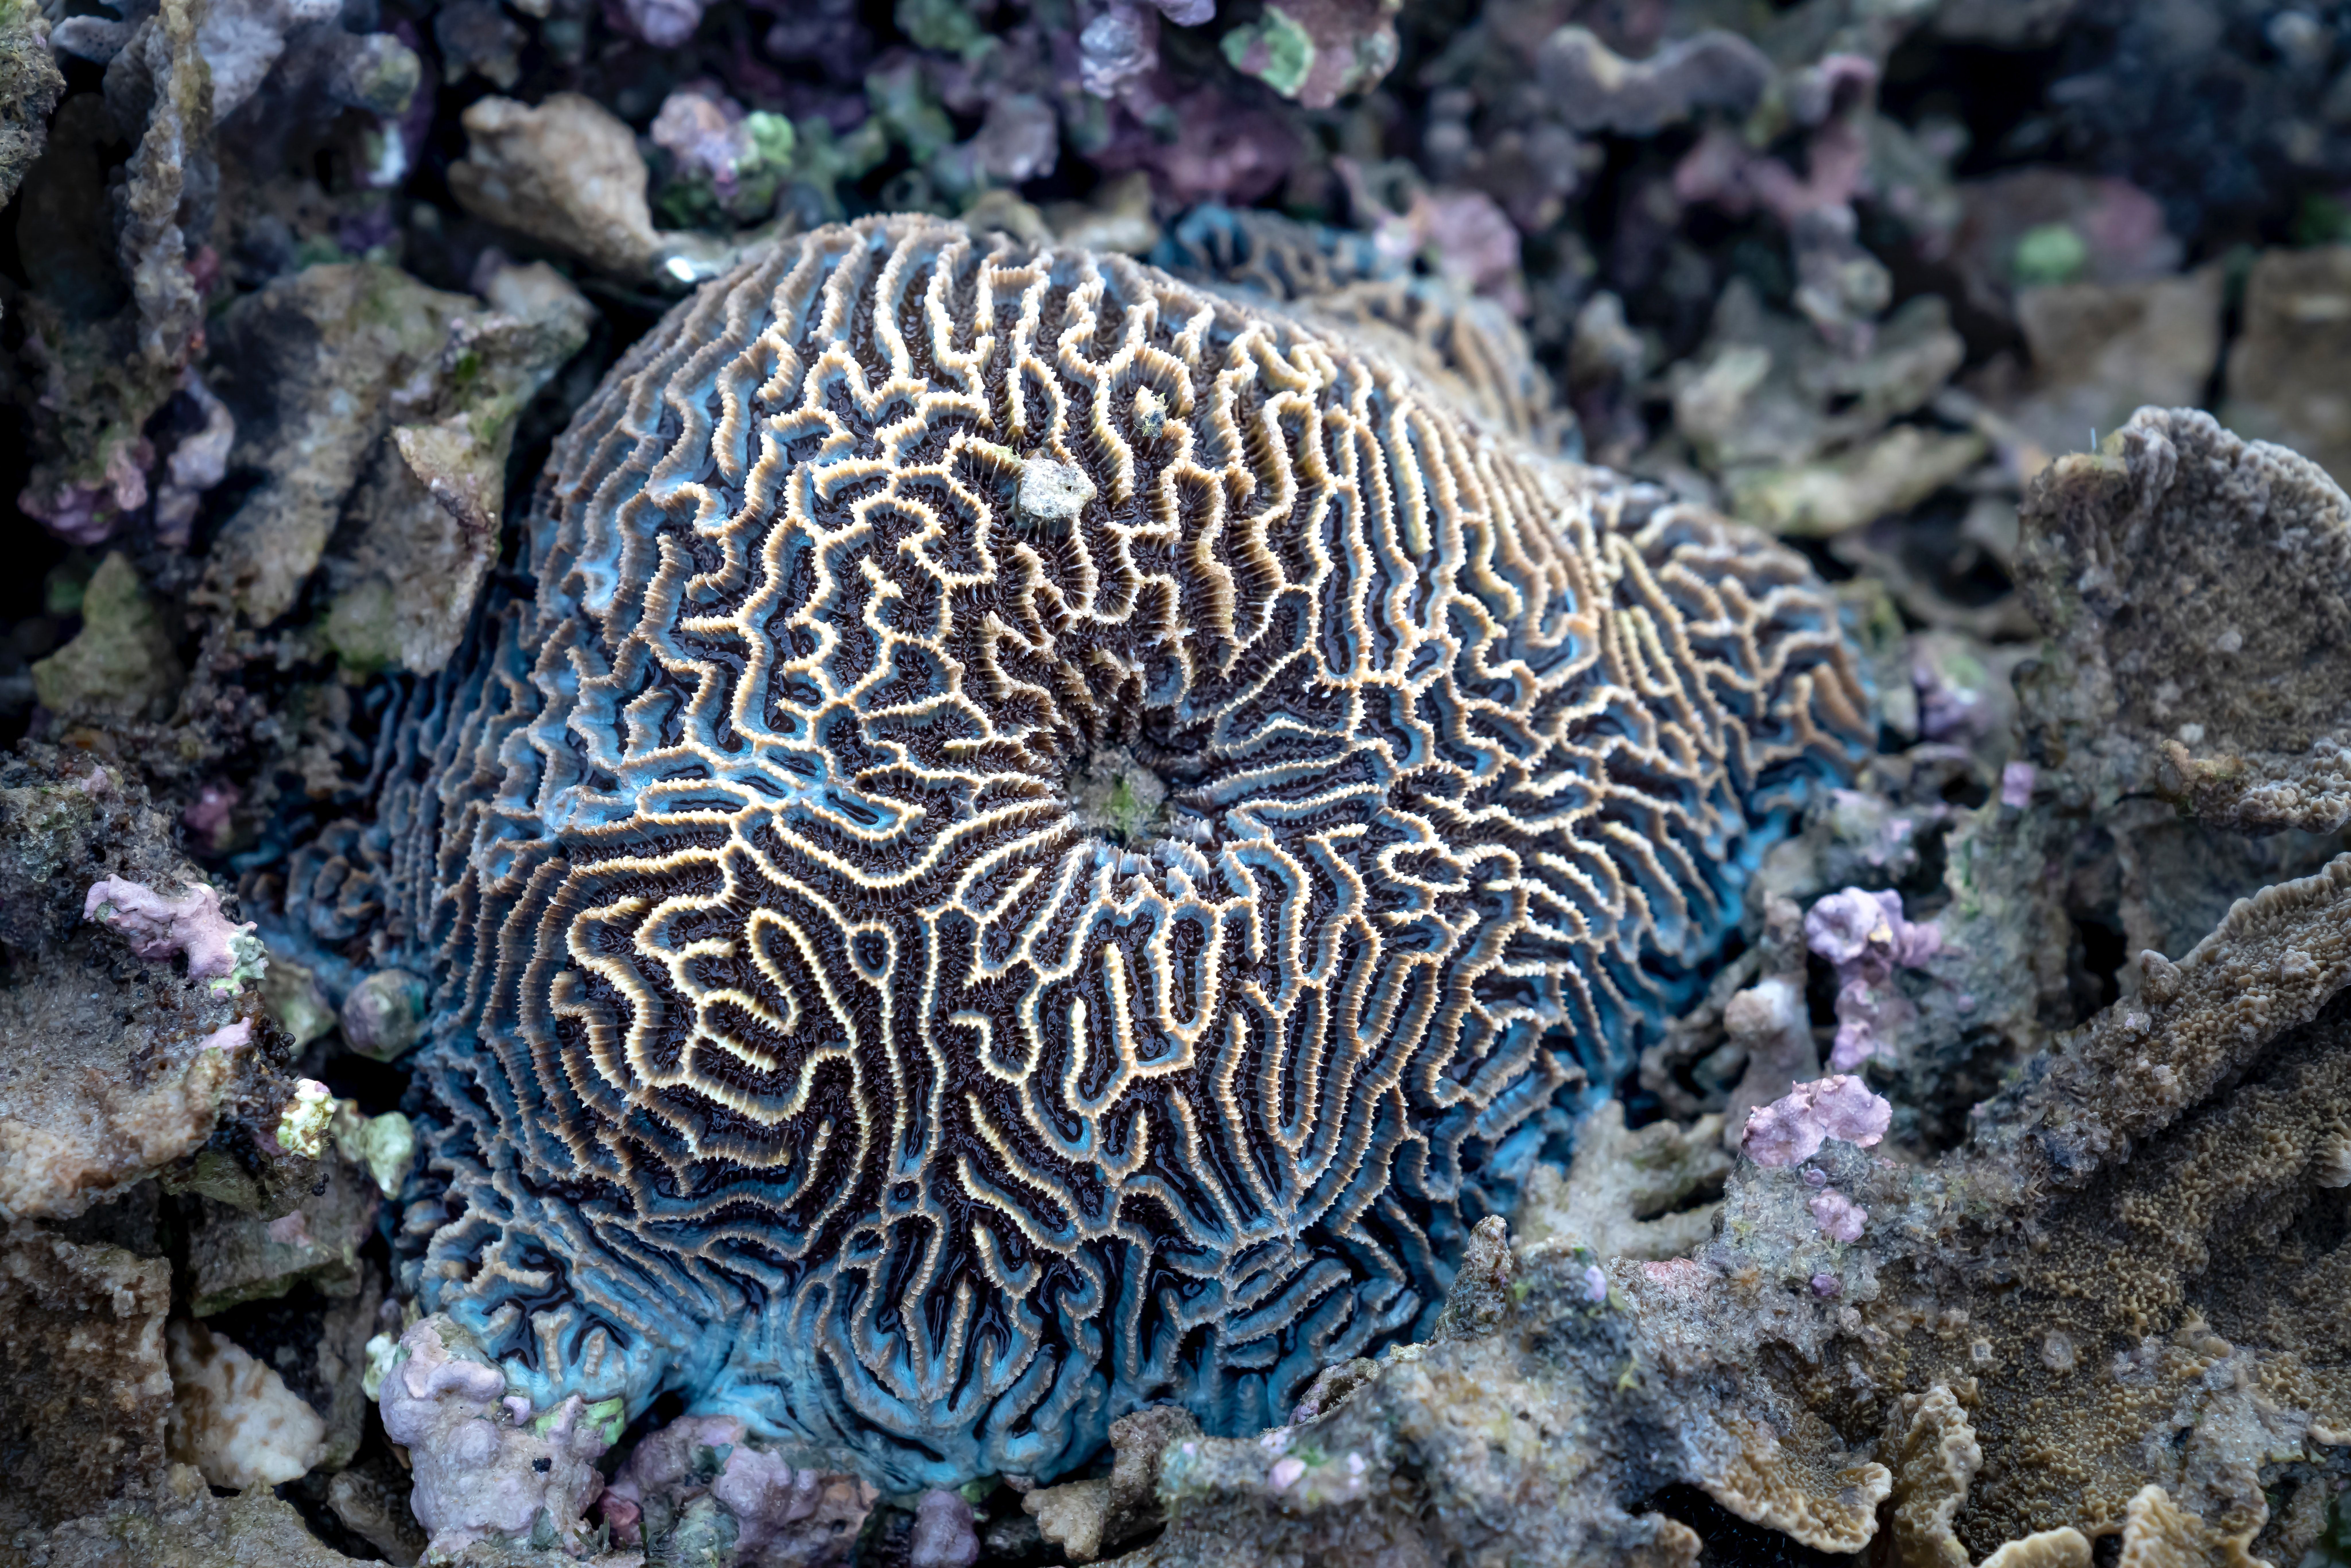 Brain coral in the sea